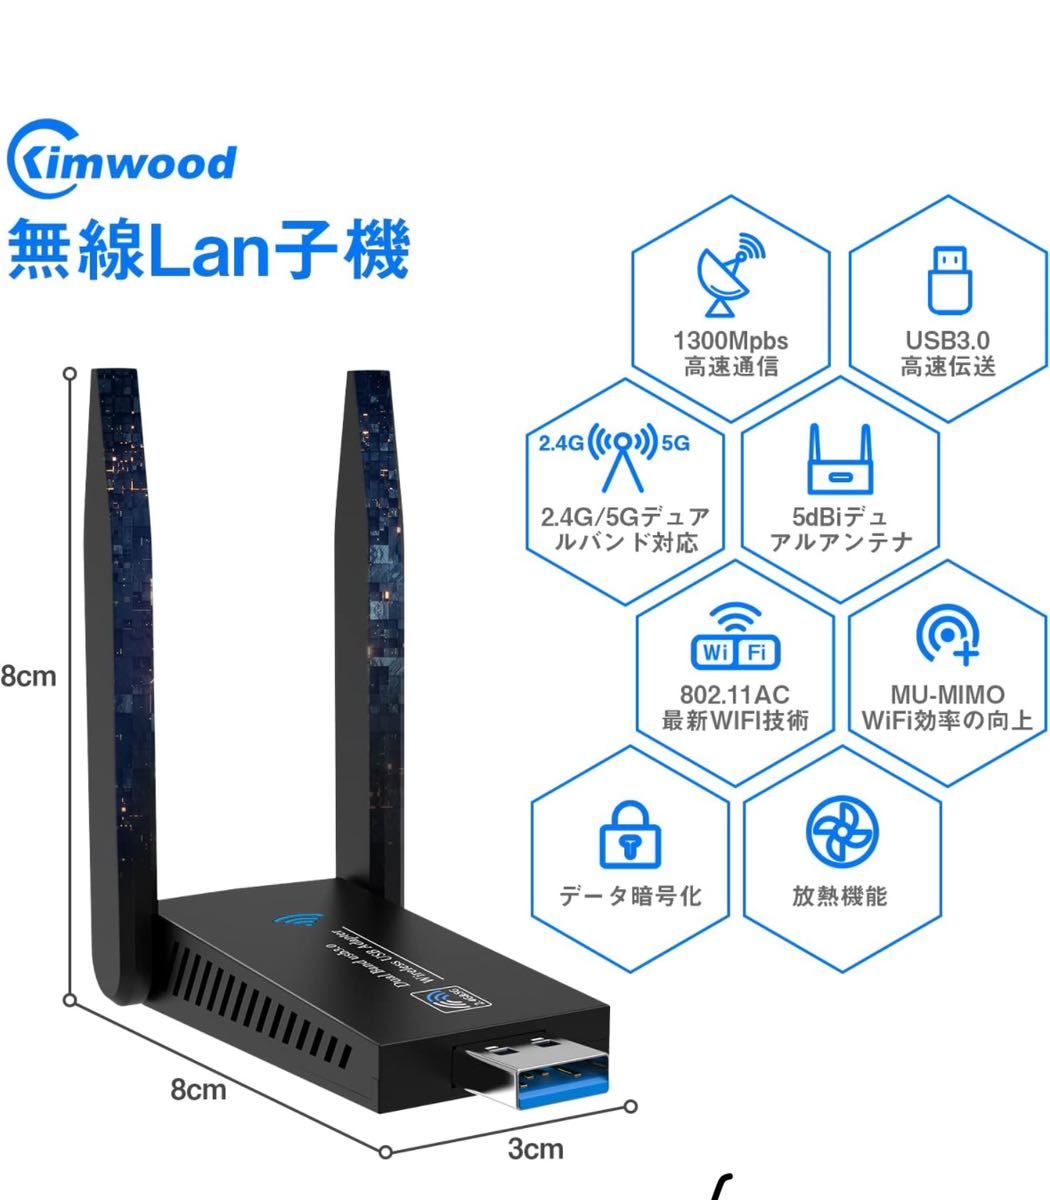 無線lan 子機 wifi usb 1300Mbps 2.4G/5G デュアルバンド USB3.0 wifi 子機 5dBi超高速通信 回転アンテナ 802.11ac/n/a/g/b技術の画像2